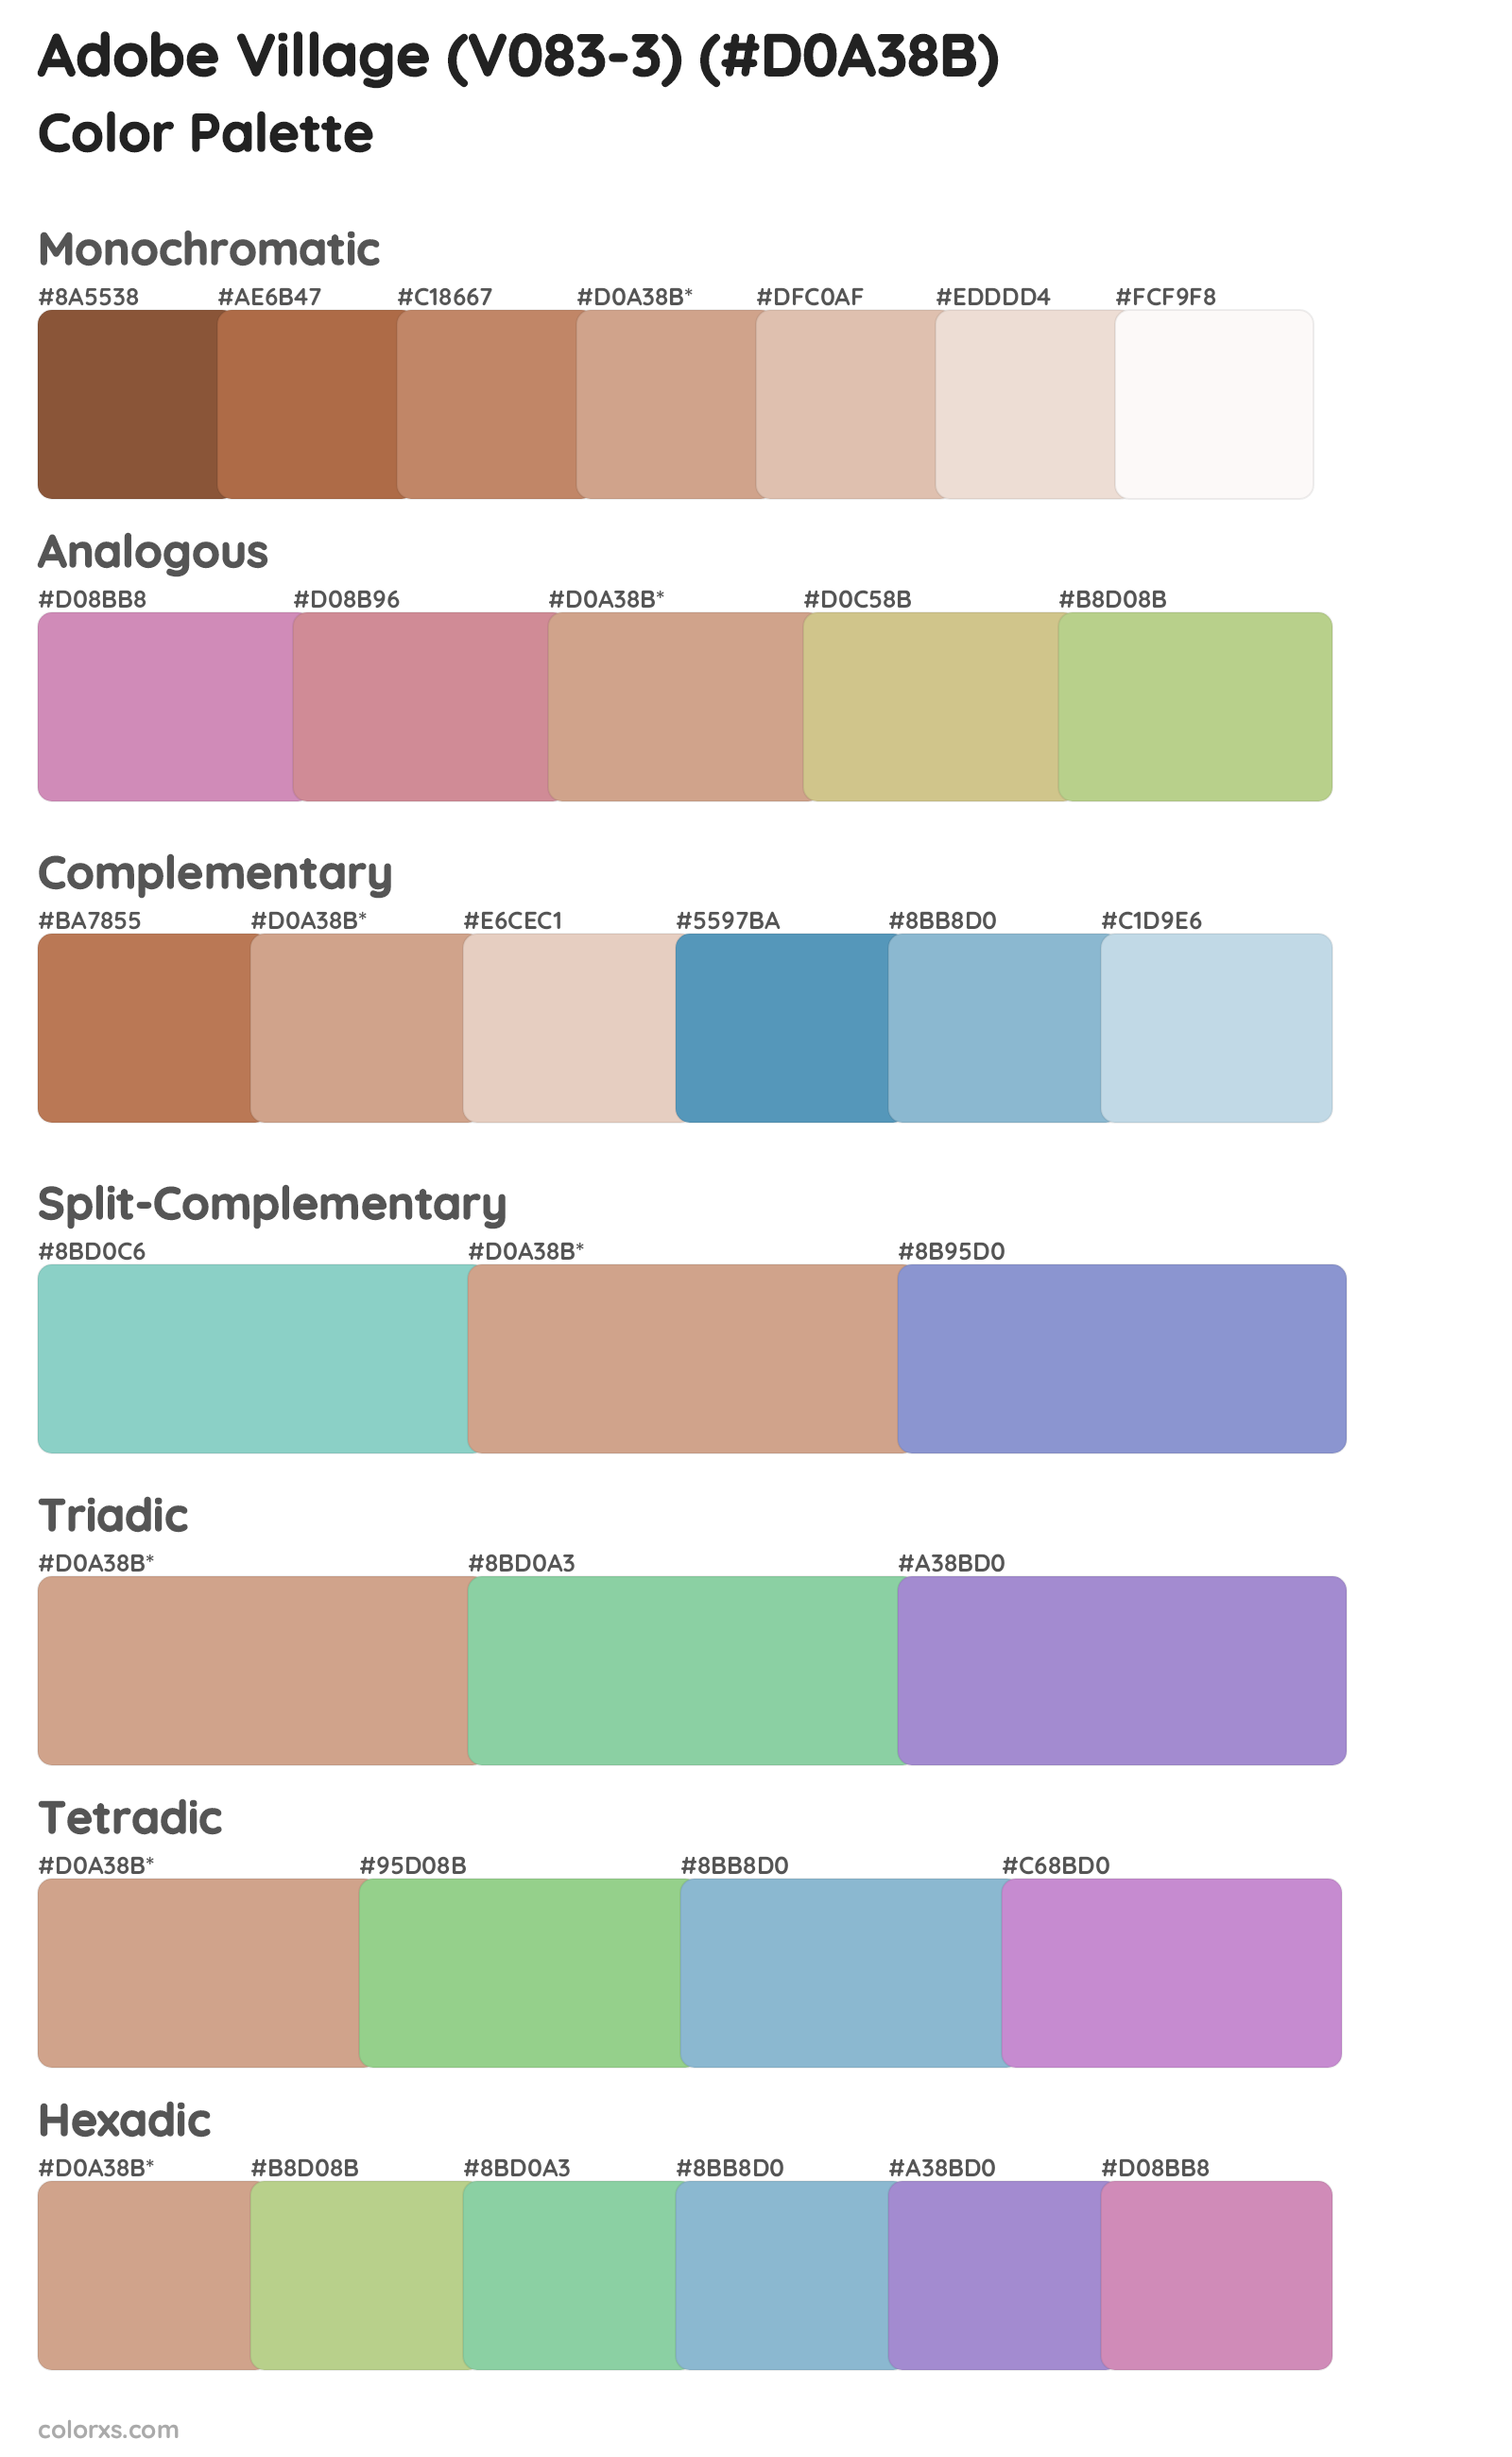 Adobe Village (V083-3) Color Scheme Palettes